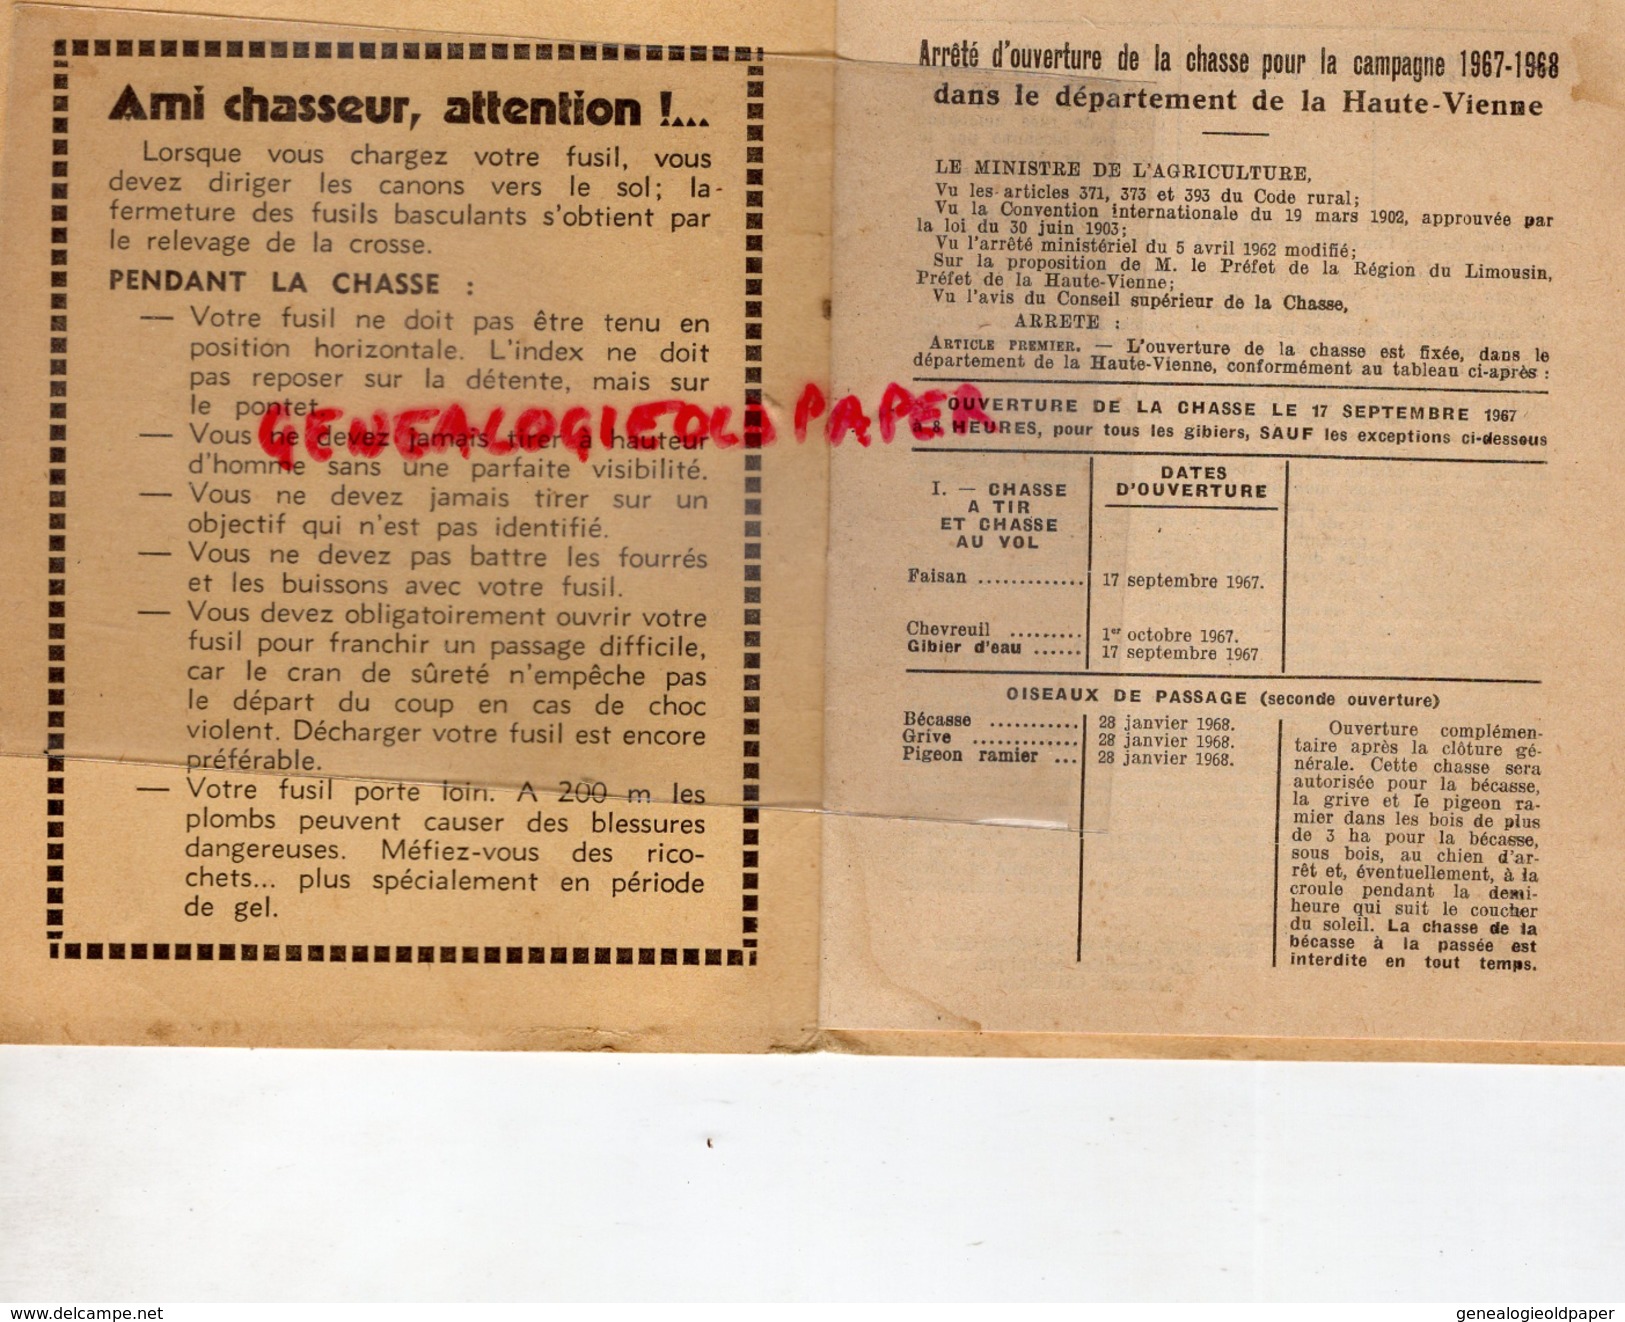 87 - CHATEAUNEUF LA FORET -STATUTS ET GUIDE DU CHASSEUR DE L A. P.S.C. CHASSE HAUTE VIENNE- 1967-68- RESERVES FEDERALES - Documents Historiques